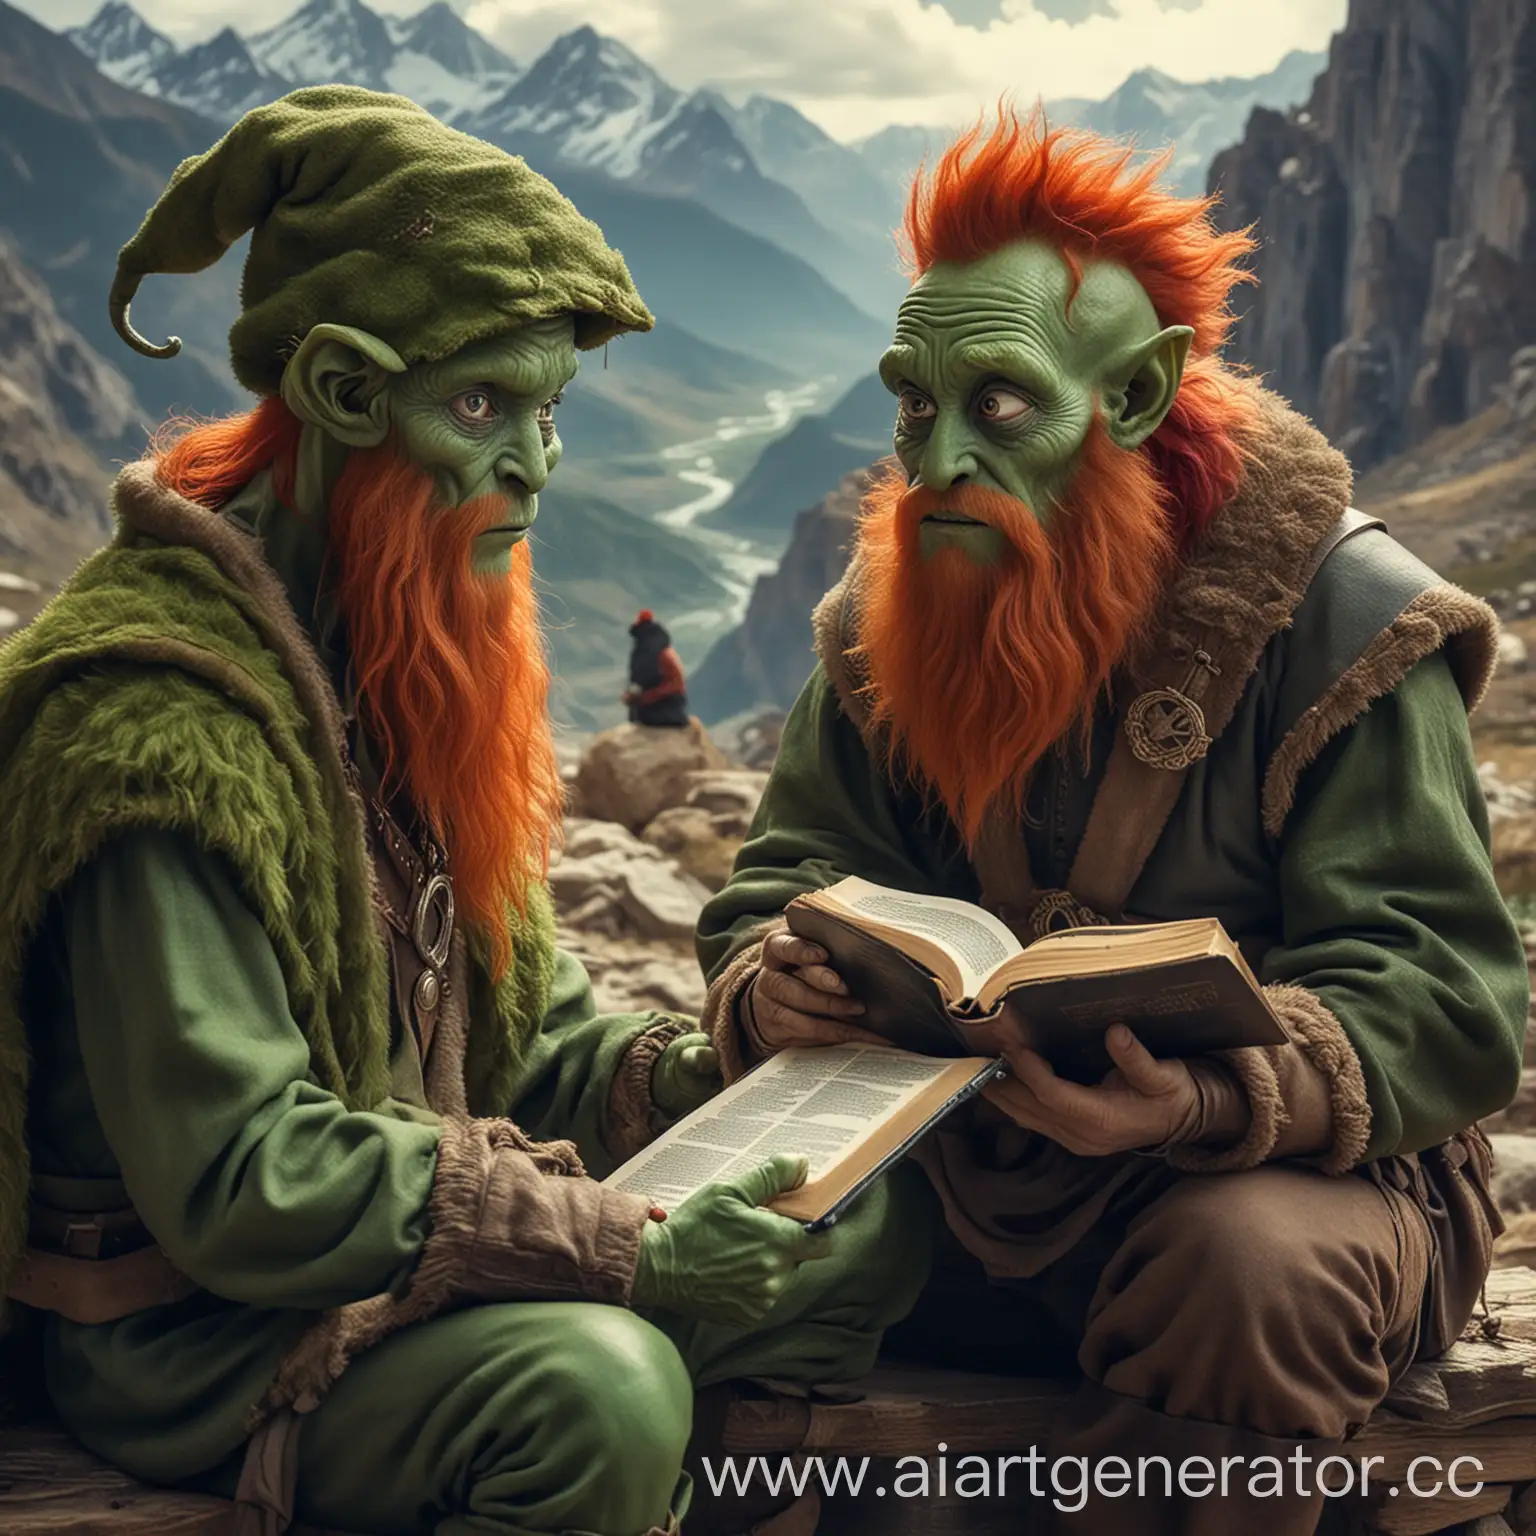 Инопланетянин с большими глазами и зеленой кожей читает Библию мужчине с рыжей бородой и в меховой шапке, сидящему рядом с ним в горах